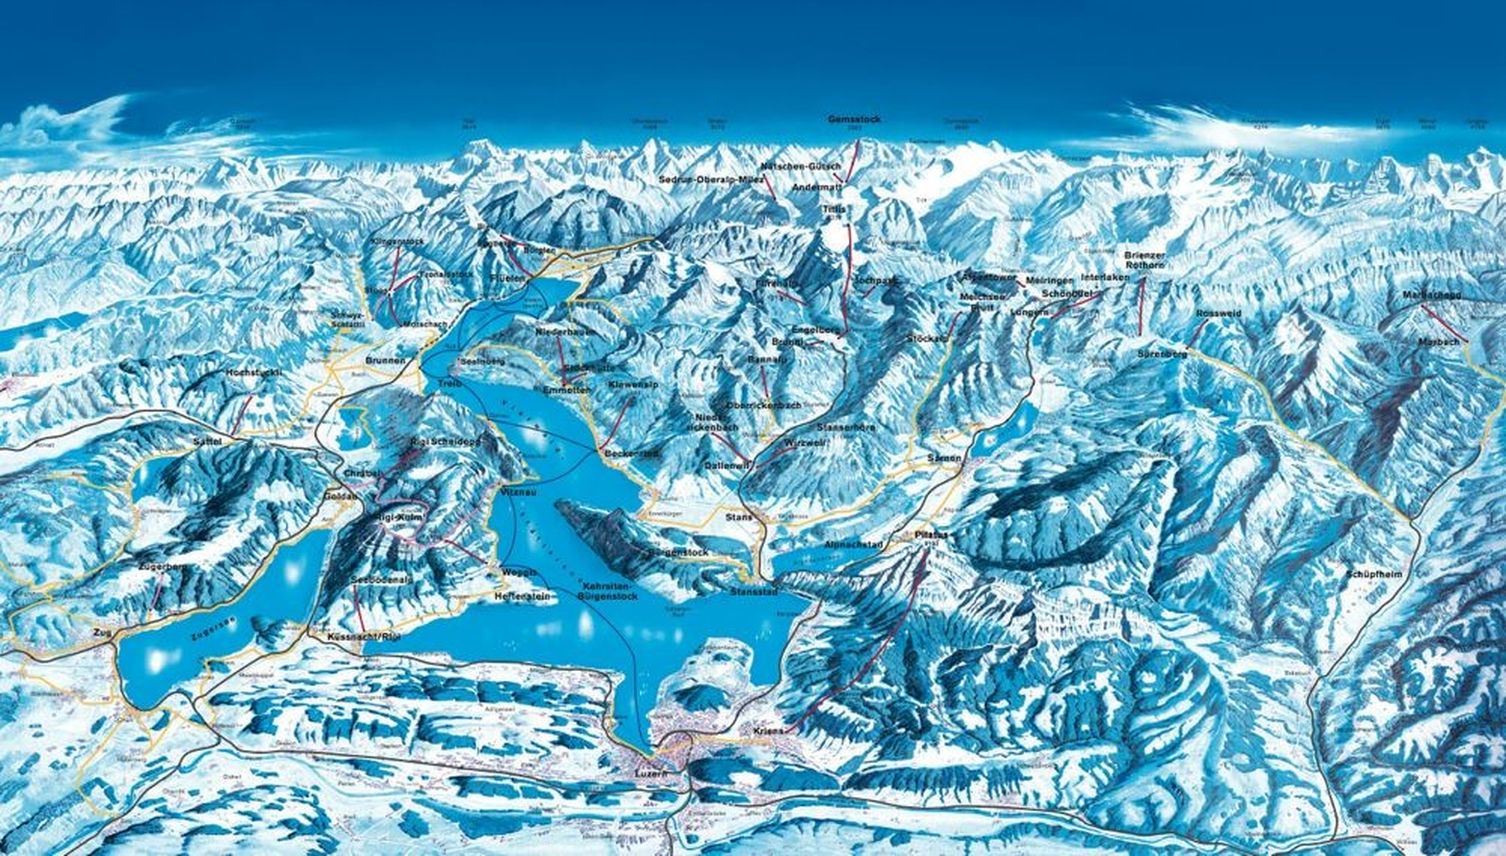 Bergbahnen ringen um Wintersportler